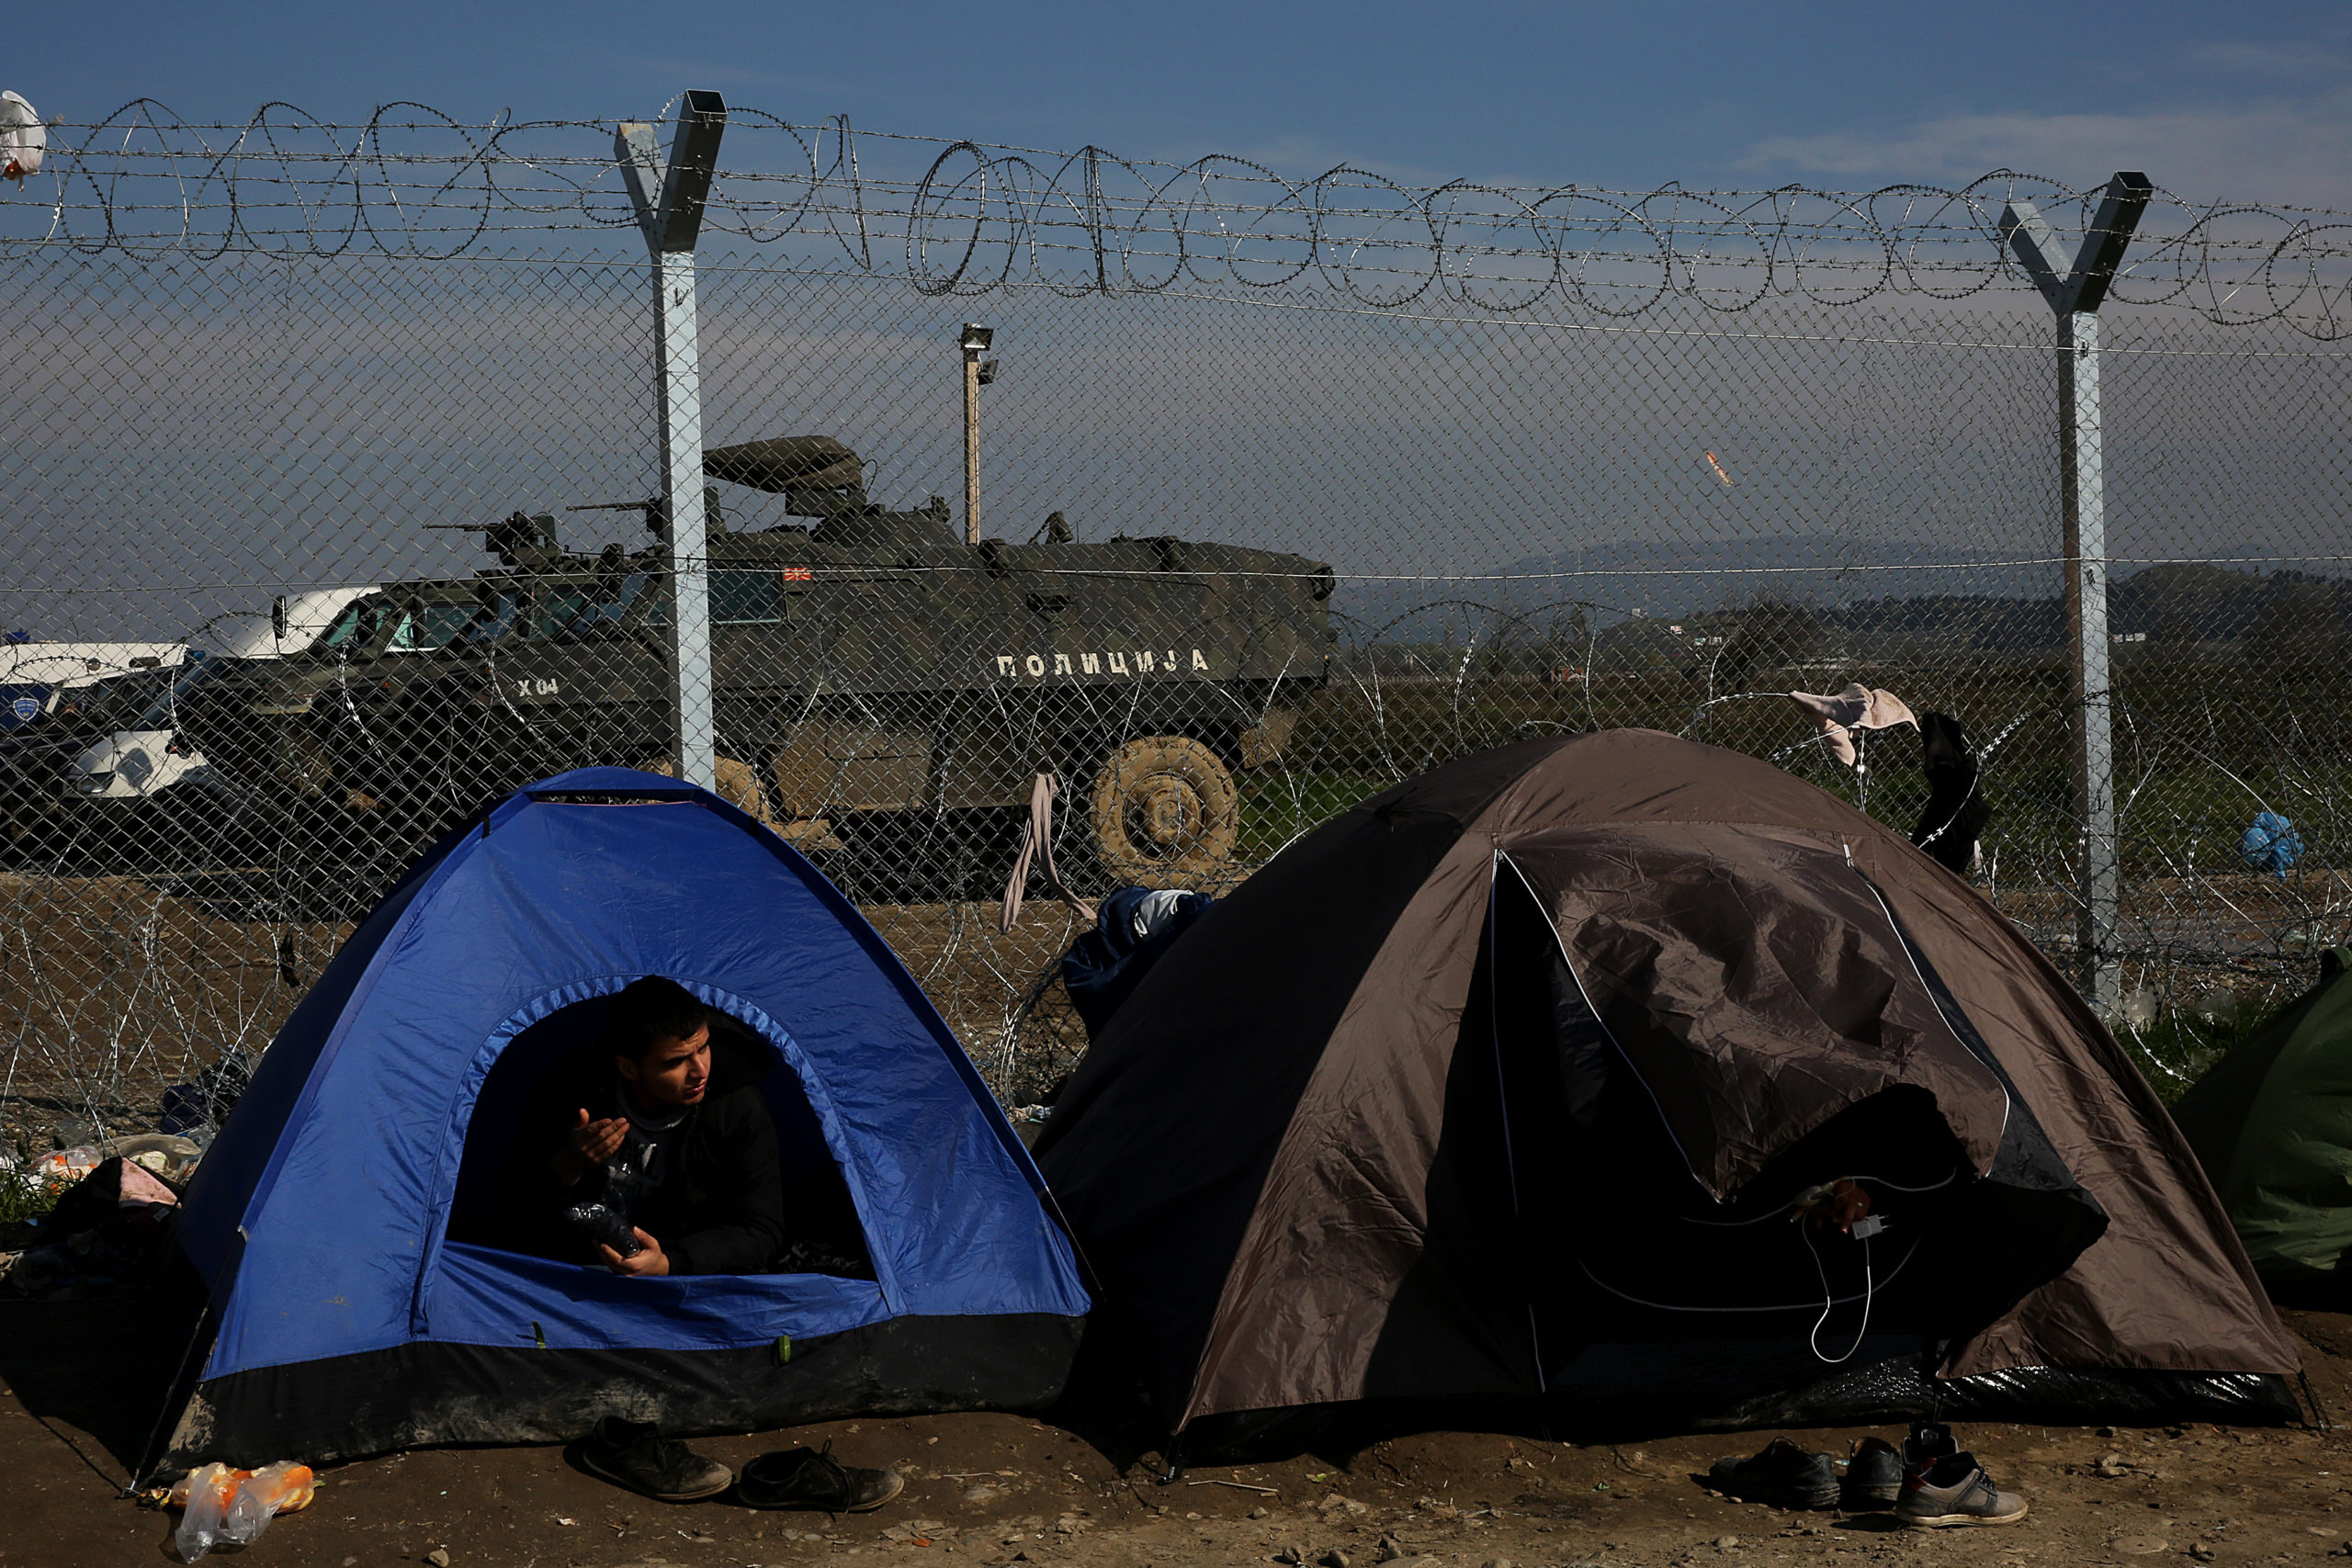 Σύγχυση για την εμπλοκή του στρατού στη σίτιση των προσφύγων στην Ειδομένη – ΒΙΝΤΕΟ